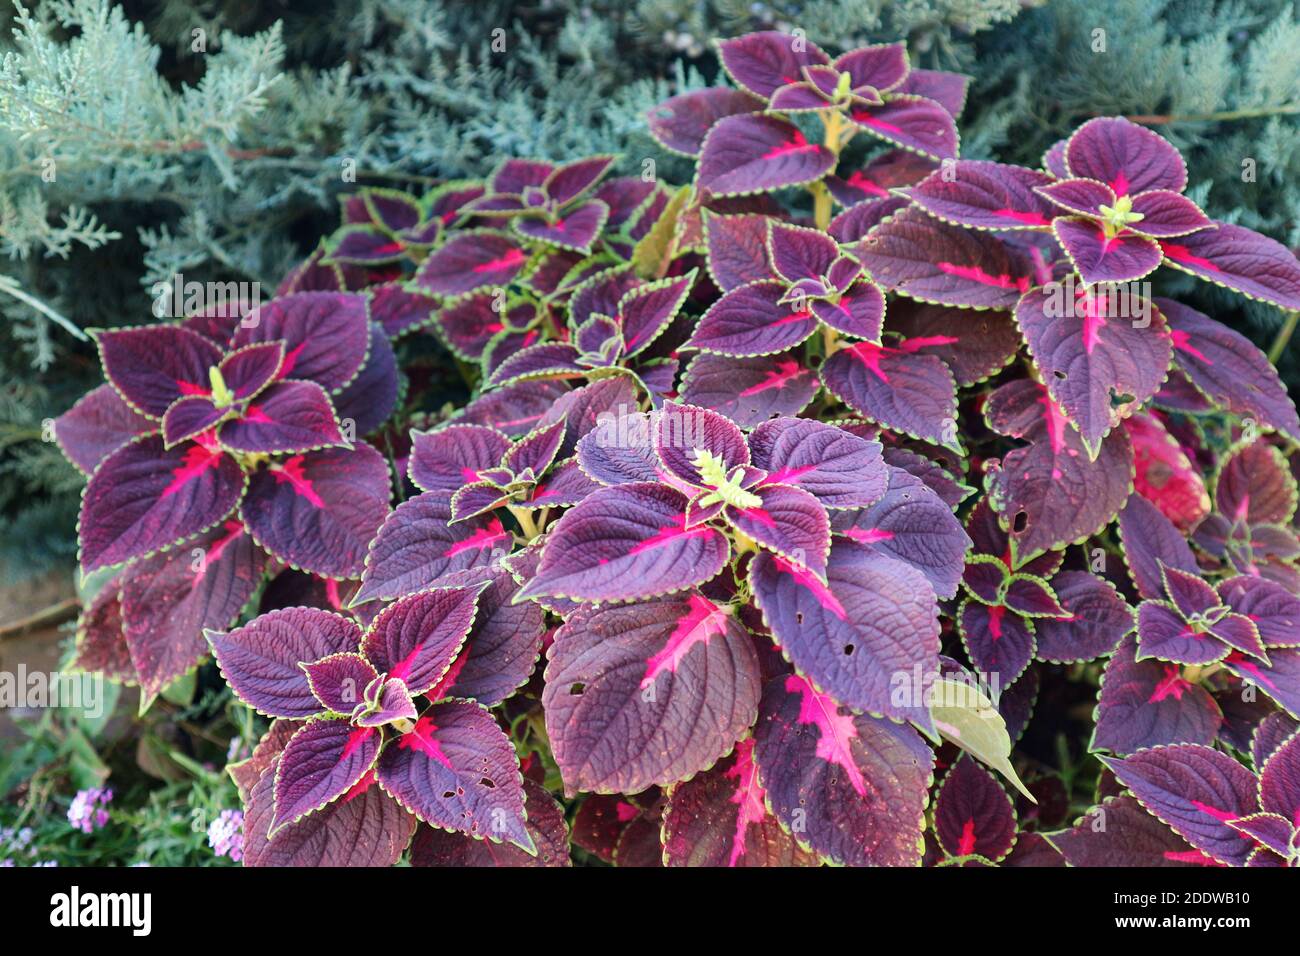 Coleus oder Plectranthus scutellarioides Pflanze. Lila Blätter der bemalten  Brennnessel im Garten Stockfotografie - Alamy